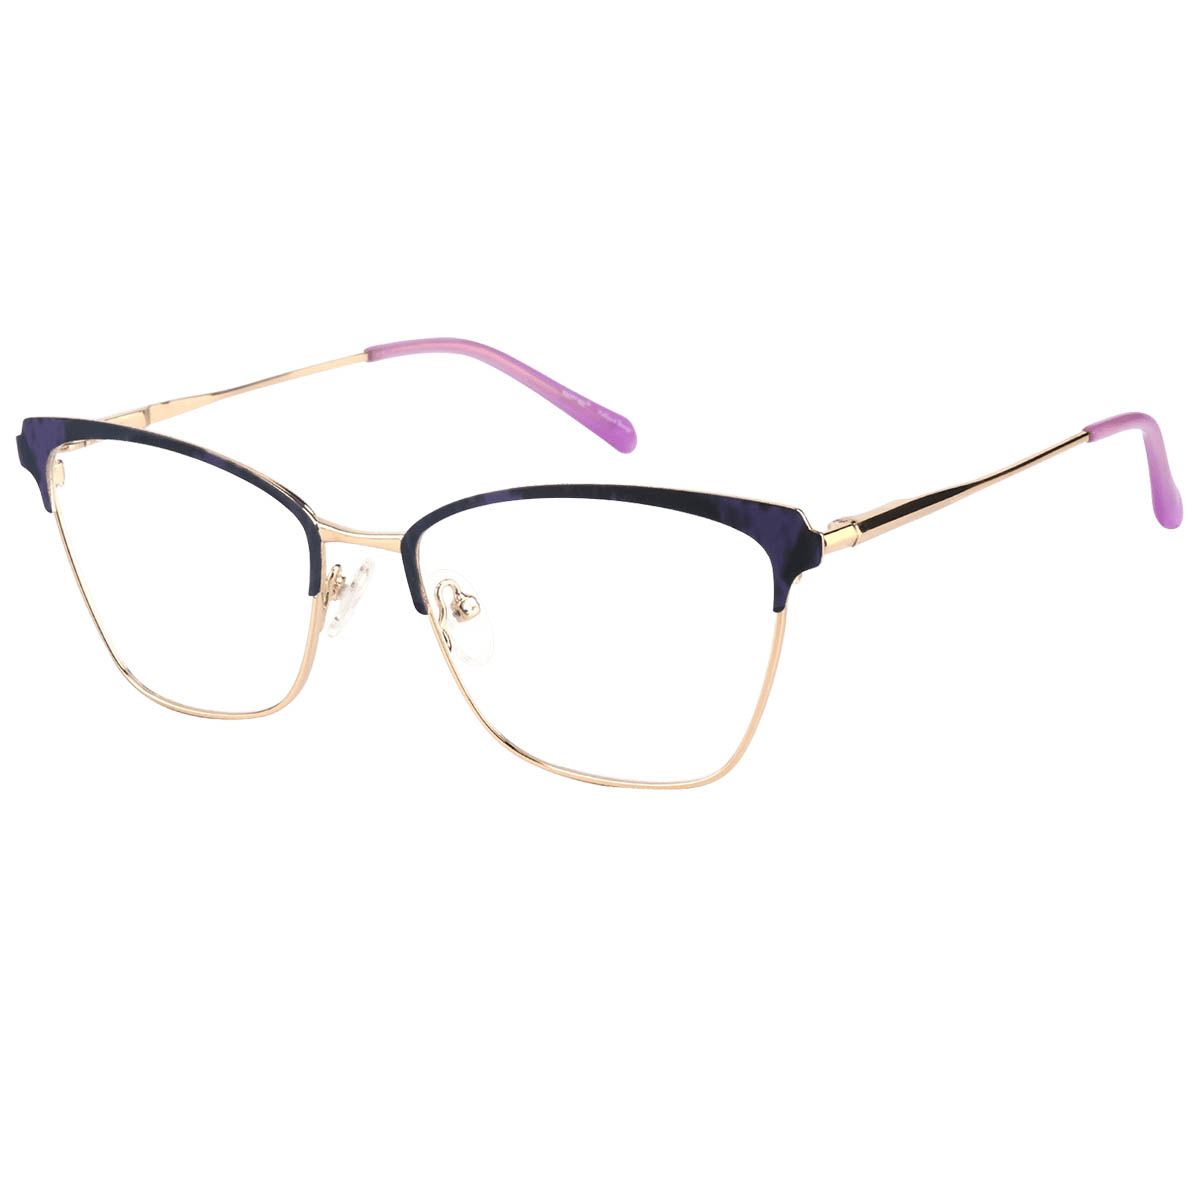 Cathleen - Square Purple Reading Glasses for Women